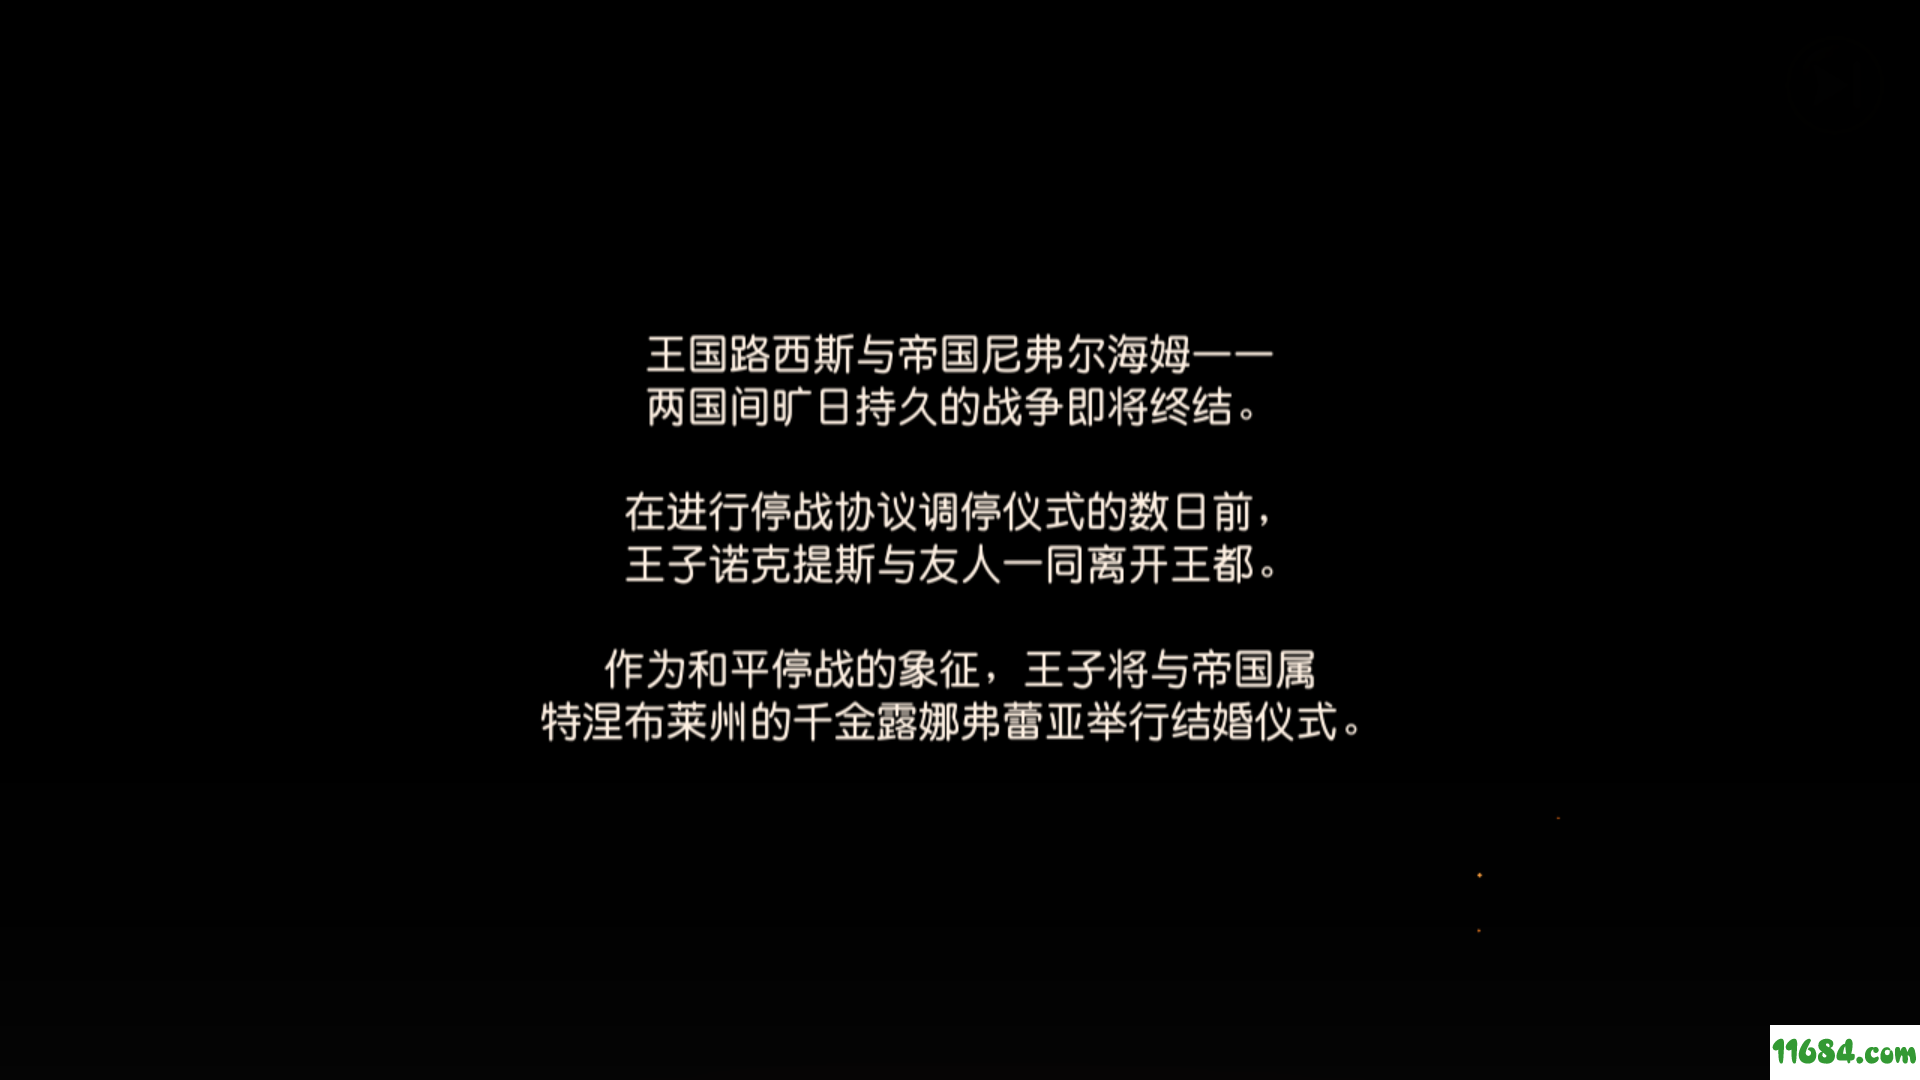 最终幻想15 FINAL FANTASY XV 安卓单文件完整直装版下载